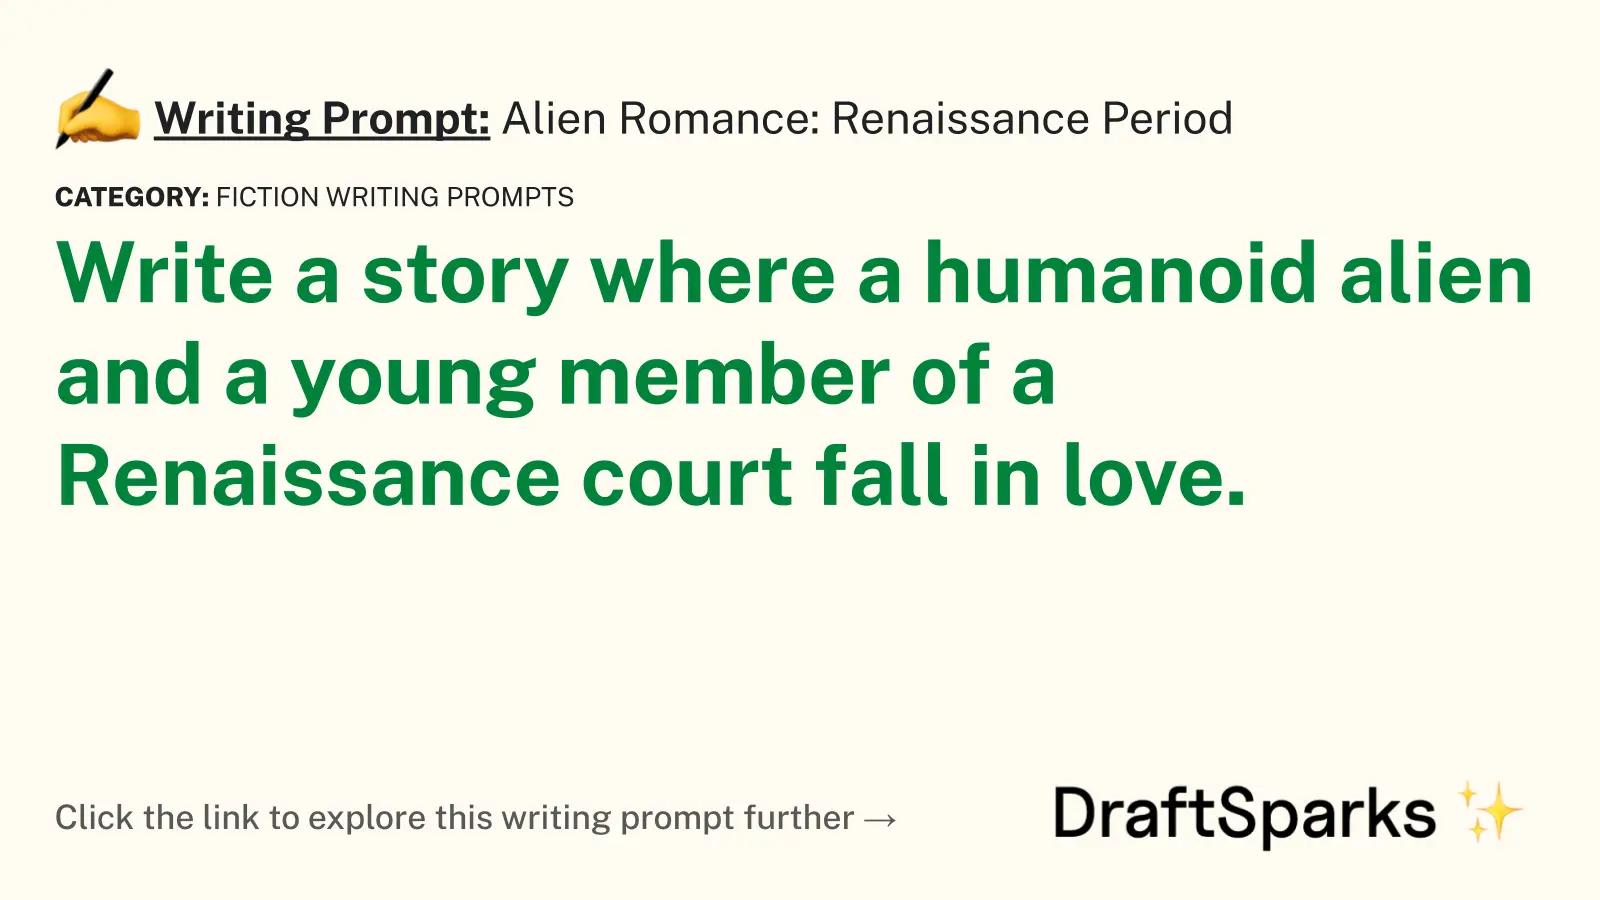 Alien Romance: Renaissance Period